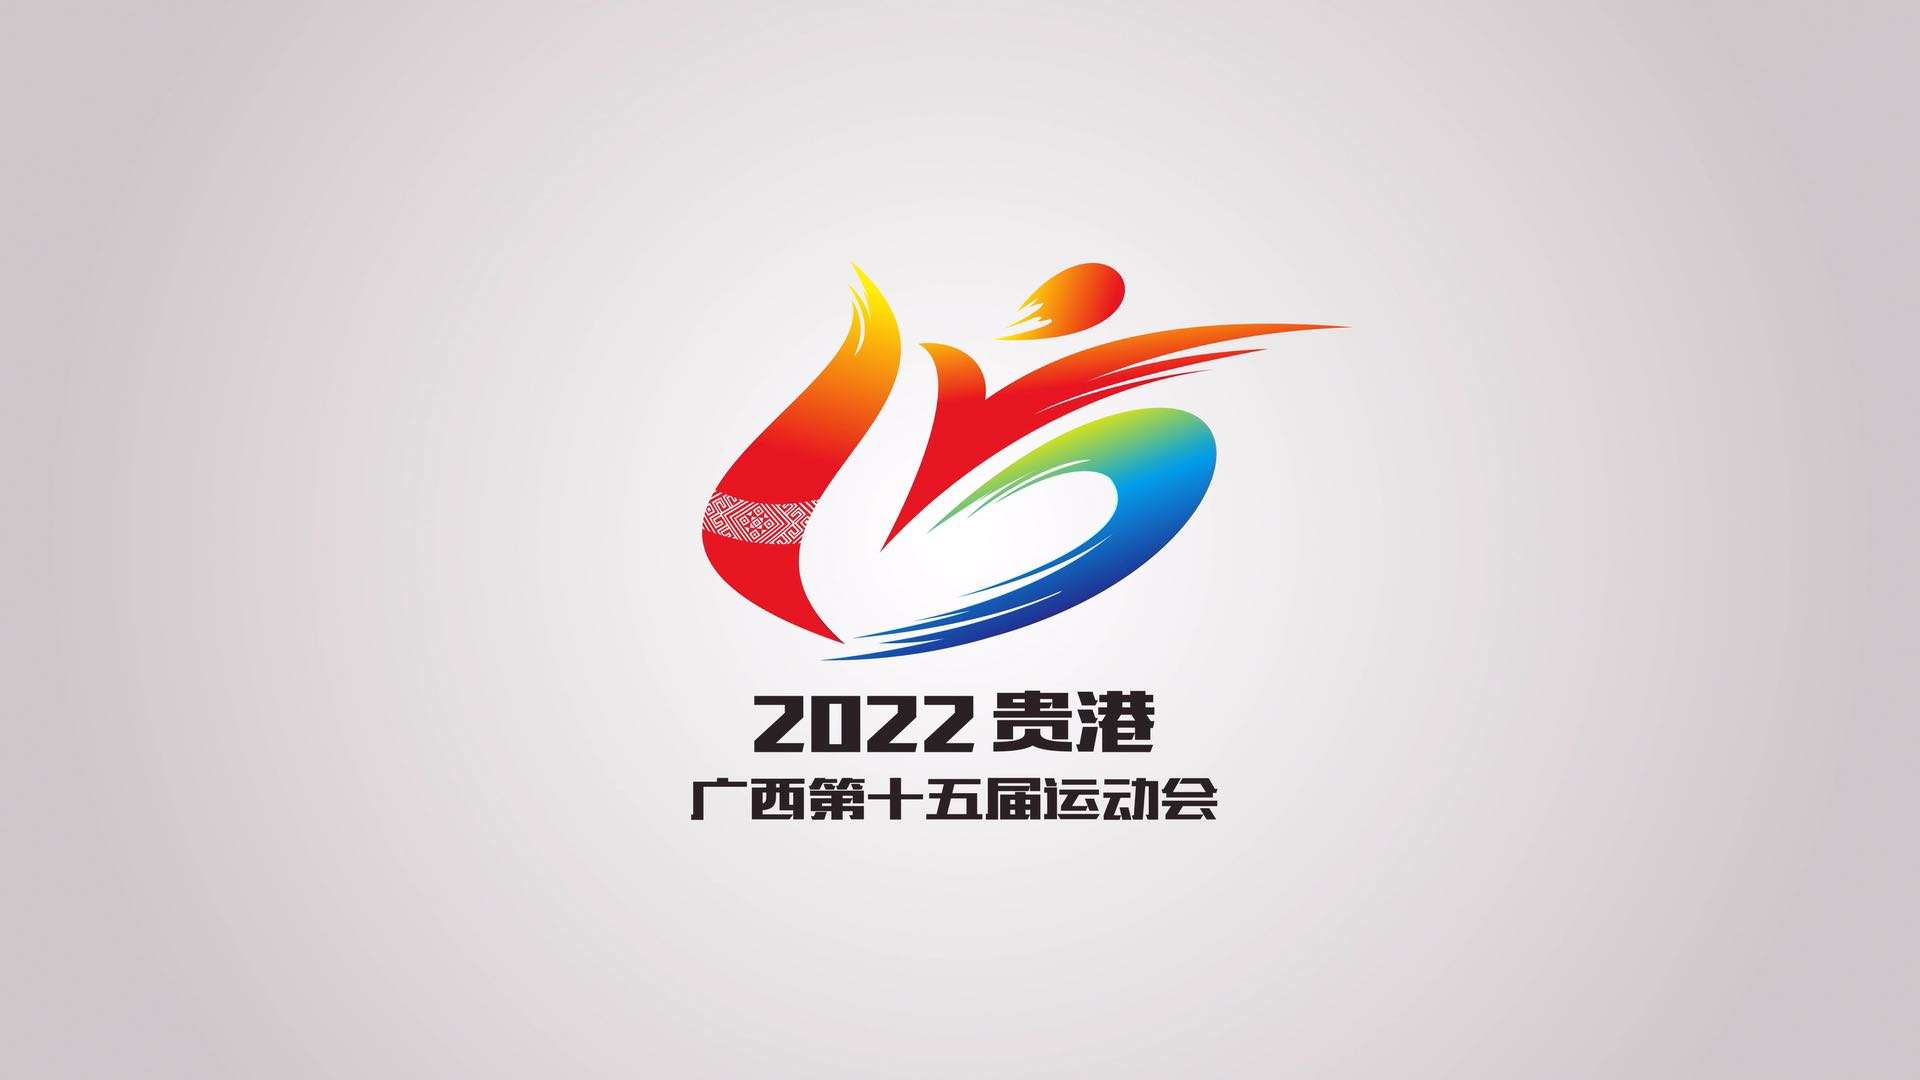 广西壮族自治区第十五届运动会倒计时一周年宣传片《心有力量》